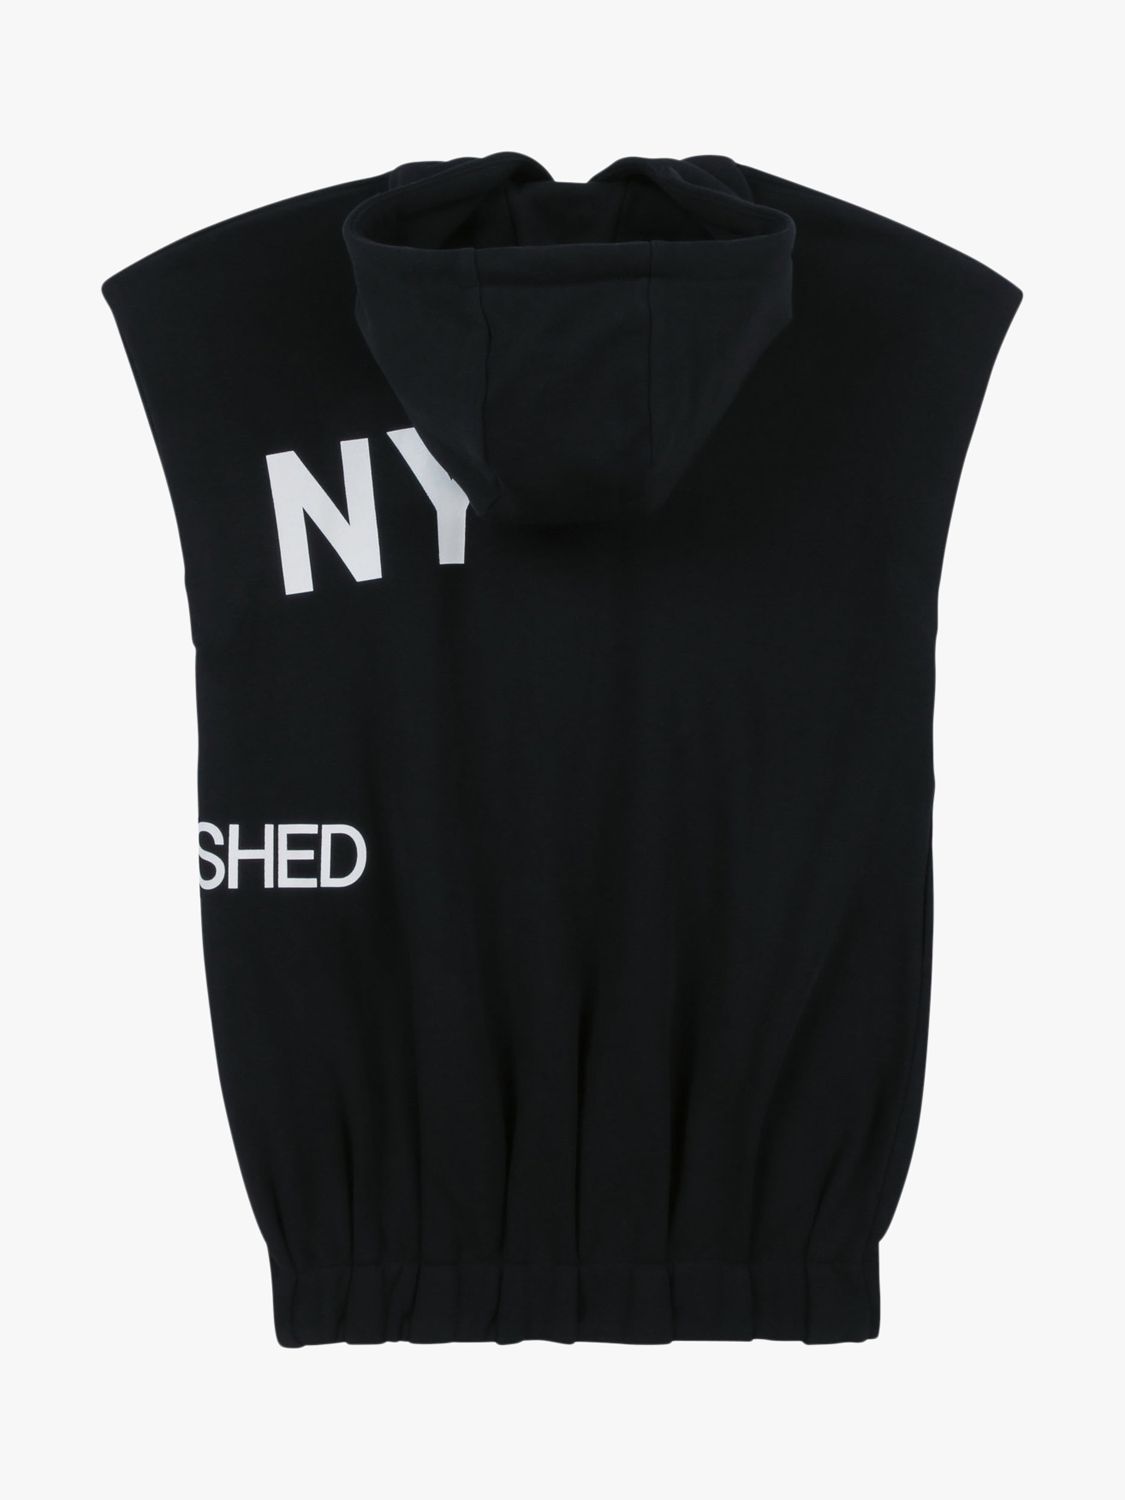 DKNY Kids' Hooded Fleece Dress, Black, 4 years